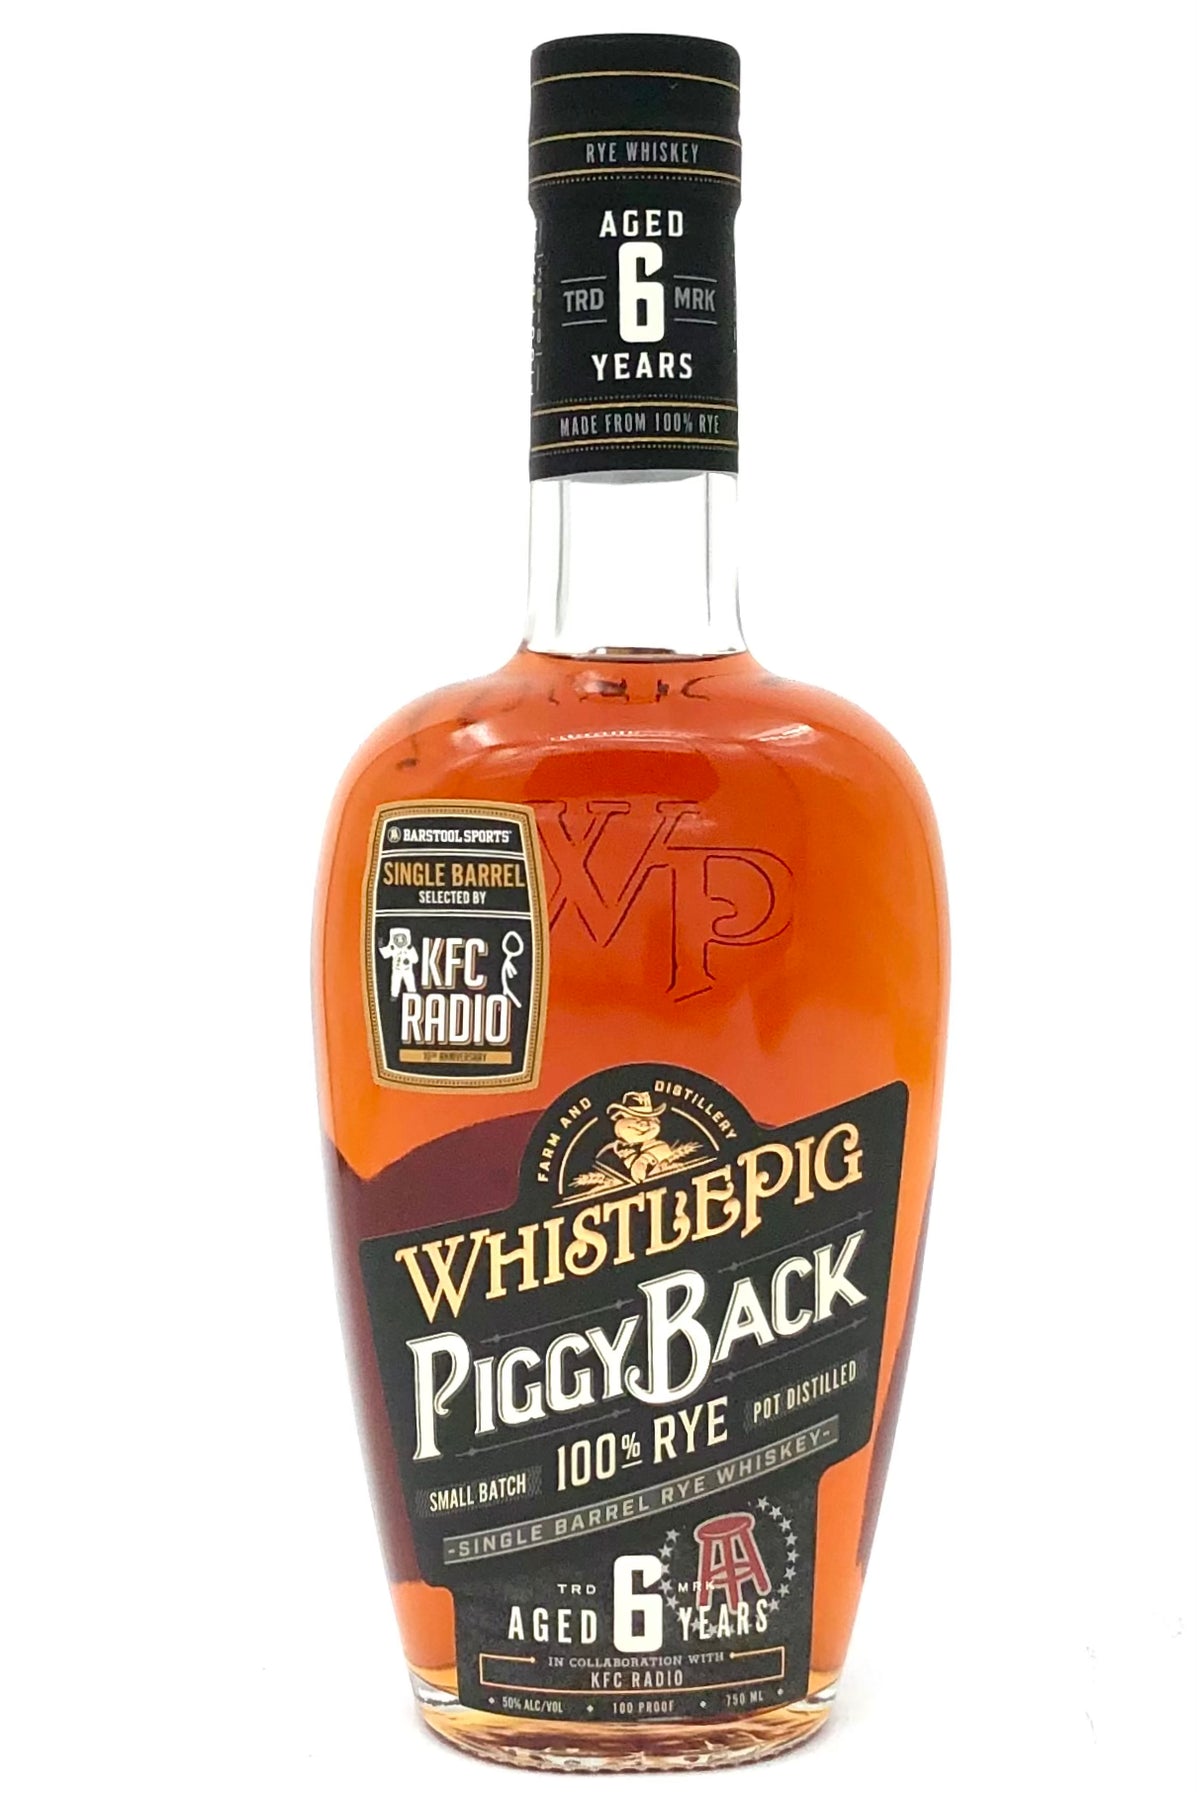 WhistlePig Piggyback Single Barrel Rye Whiskey selected by KFC Radio